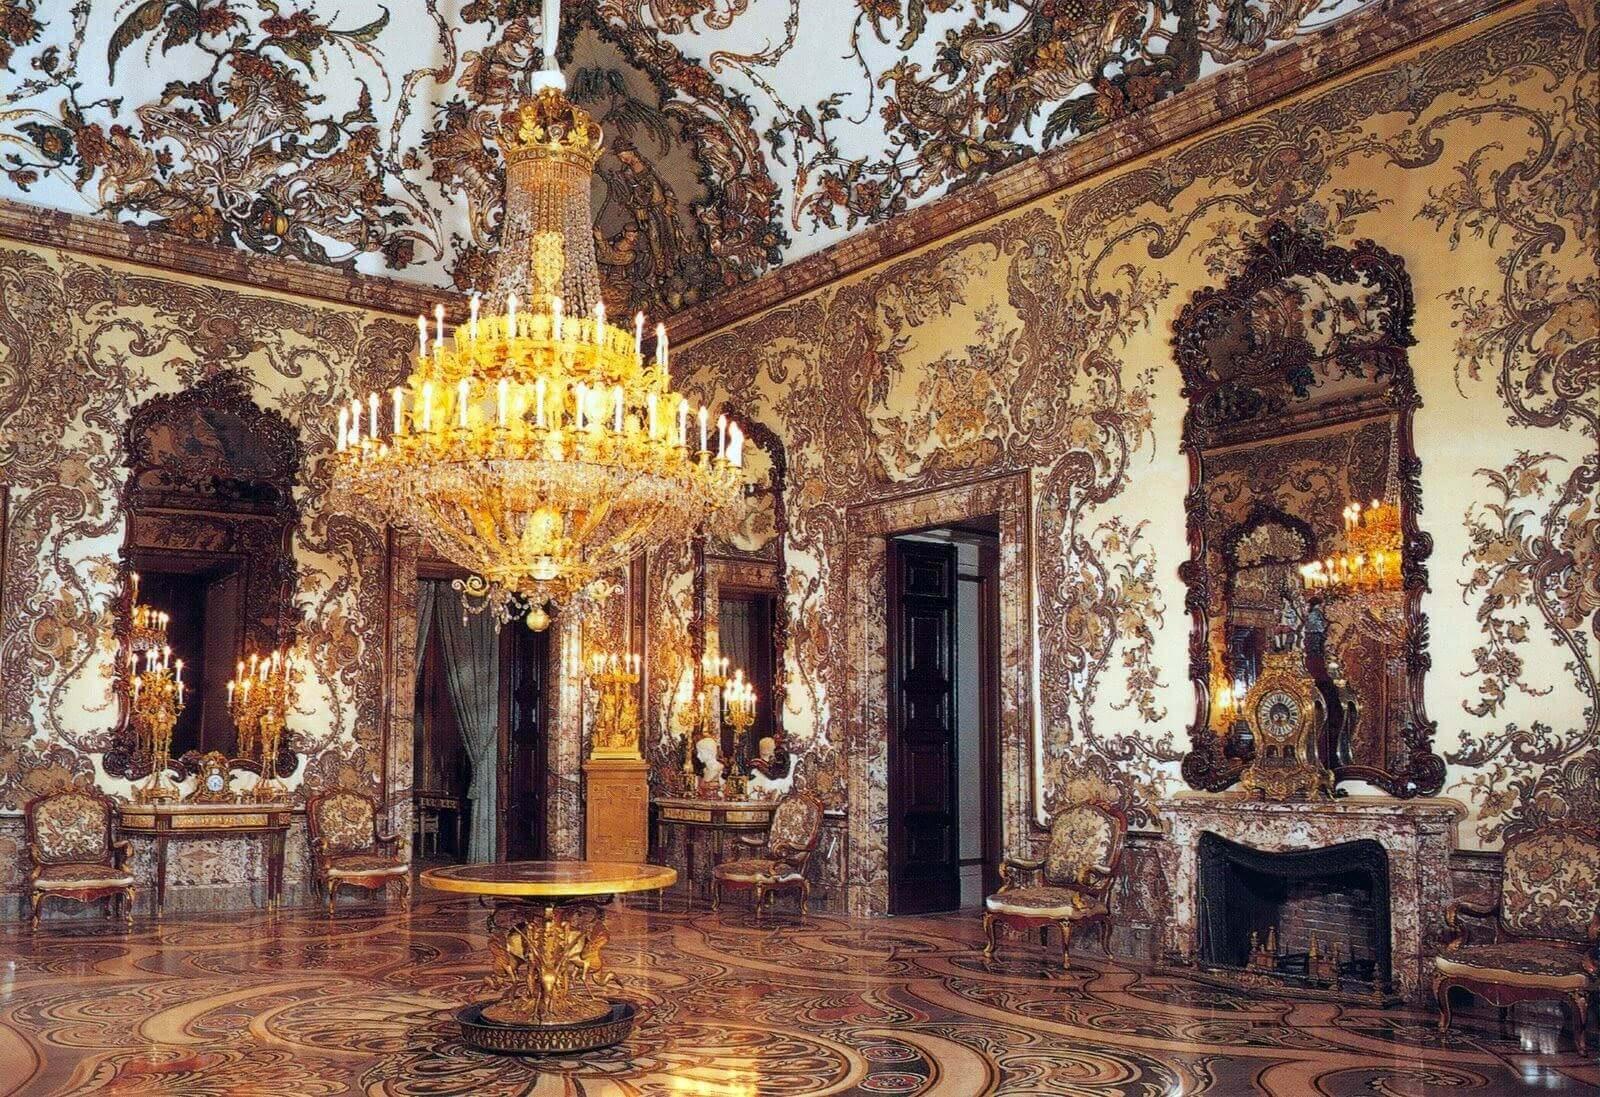 Inside Royal Palace of Madrid